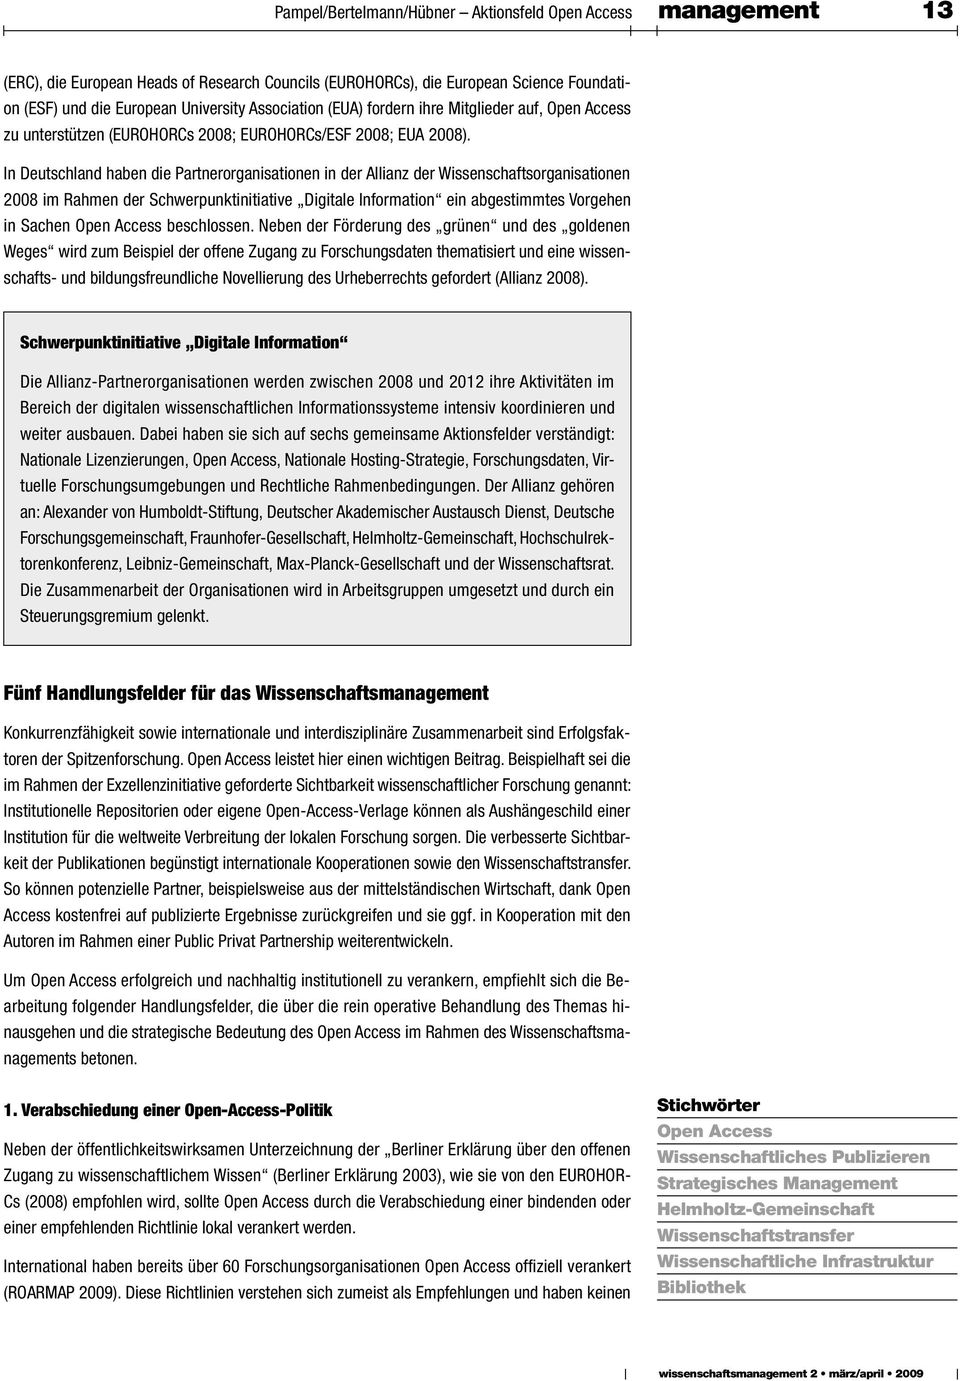 In Deutschland haben die Partnerorganisationen in der Allianz der Wissenschaftsorganisationen 2008 im Rahmen der Schwerpunktinitiative Digitale Information ein abgestimmtes Vorgehen in Sachen Open